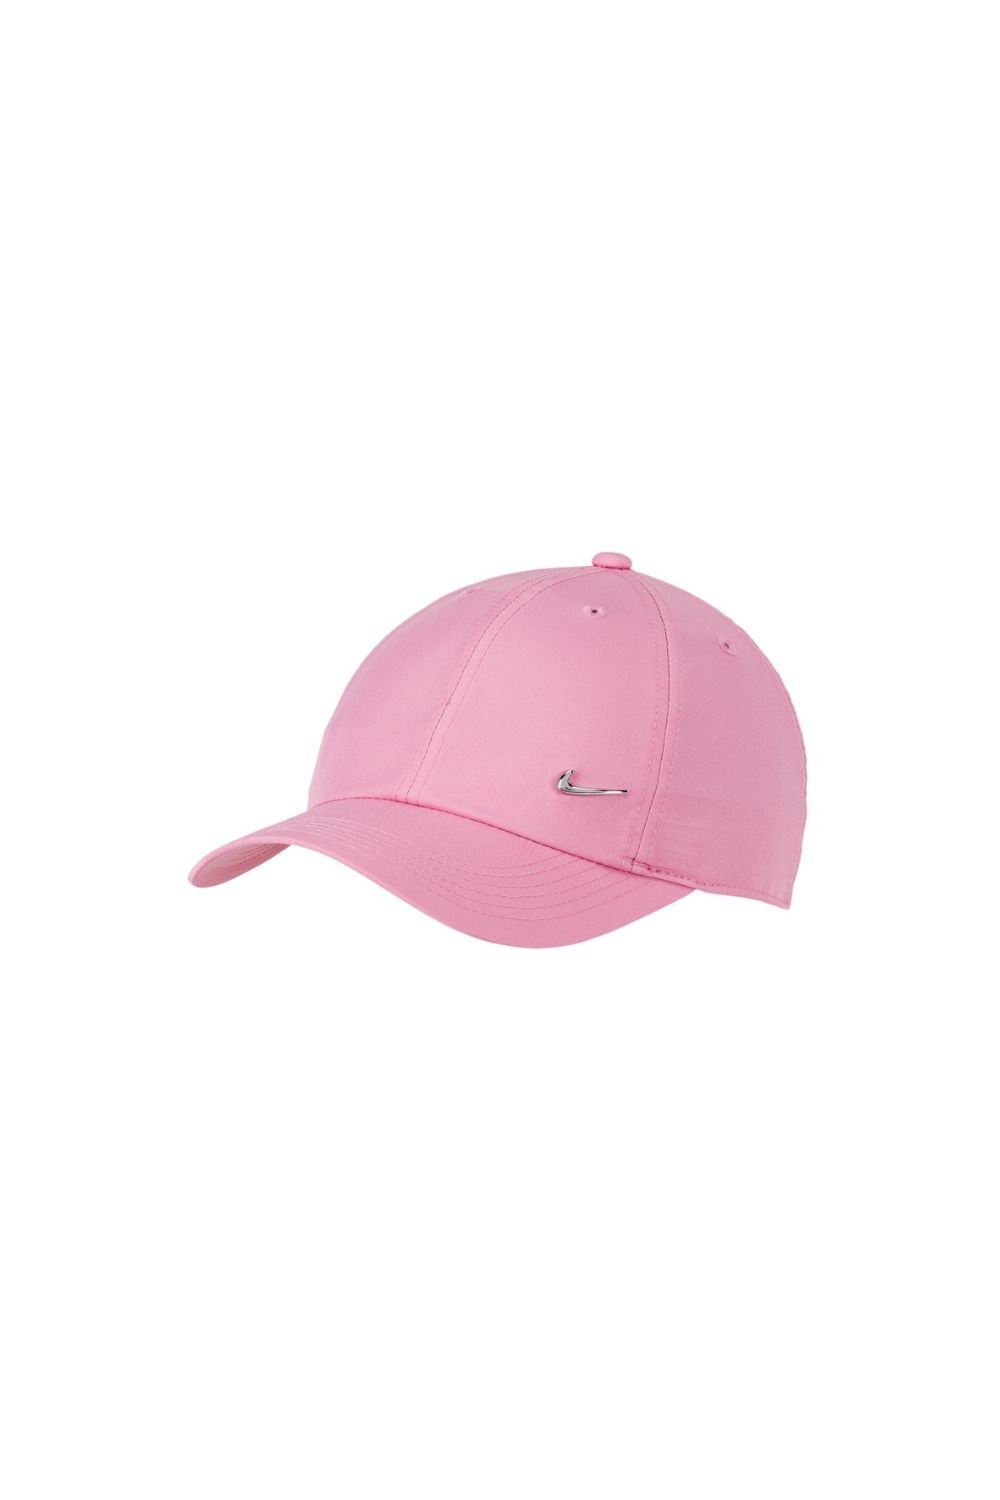 Παιδικά/Boys/Αξεσουάρ/Καπέλα NIKE - Παιδικό καπέλο NIKE METAL SWOOSH ροζ